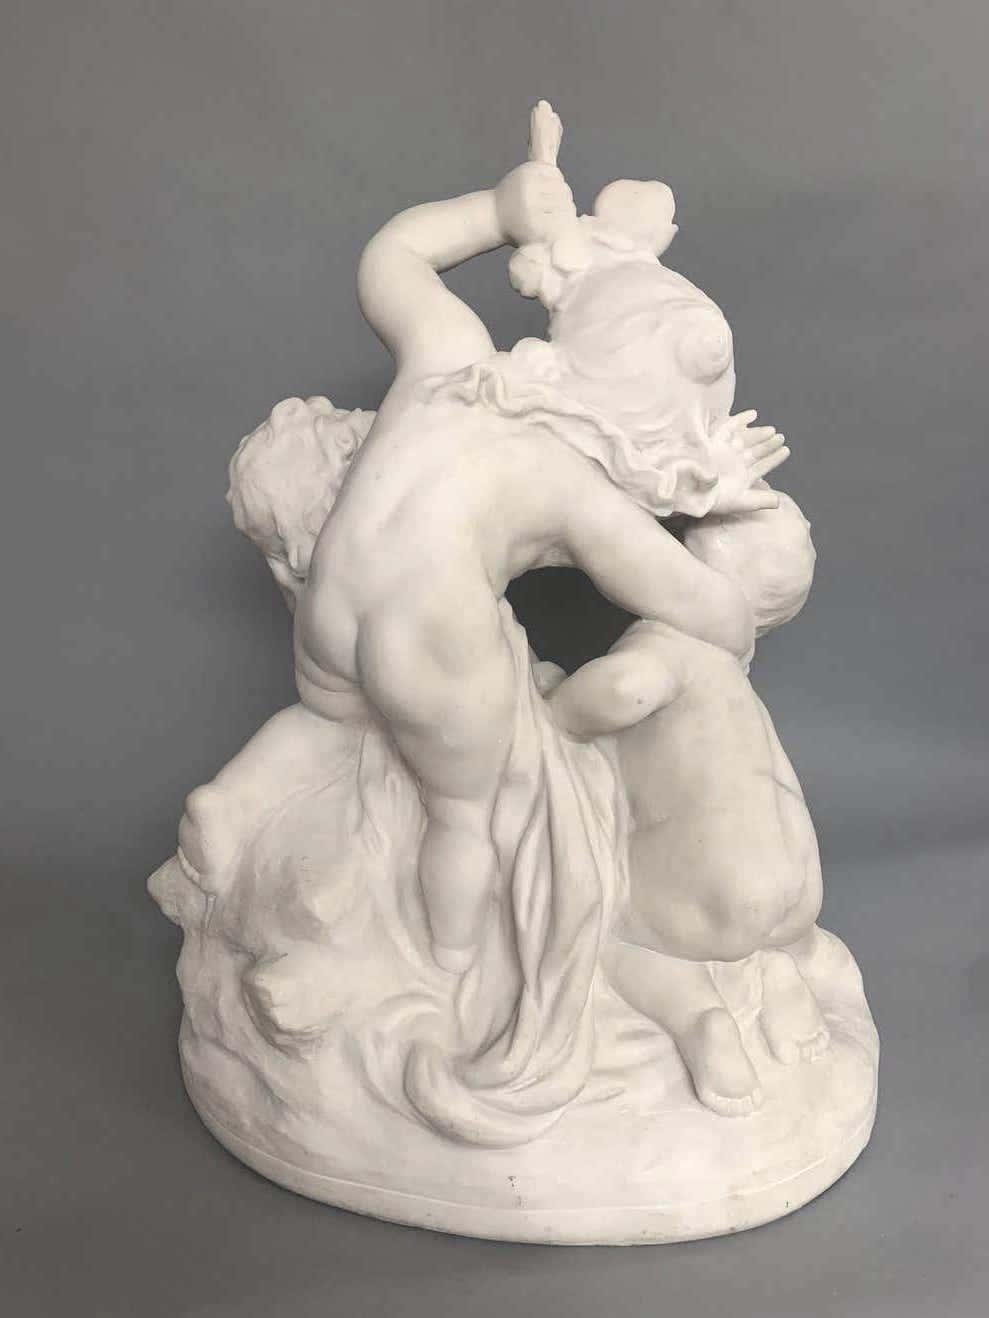 Groupement figuratif de cupidons enjoués 
par Raphael Charles Peyre (1872-1949)
Composition blanche sculptée
Signé R.Ch.Peyre
Hauteur 56 cm

NMA Inv 3969